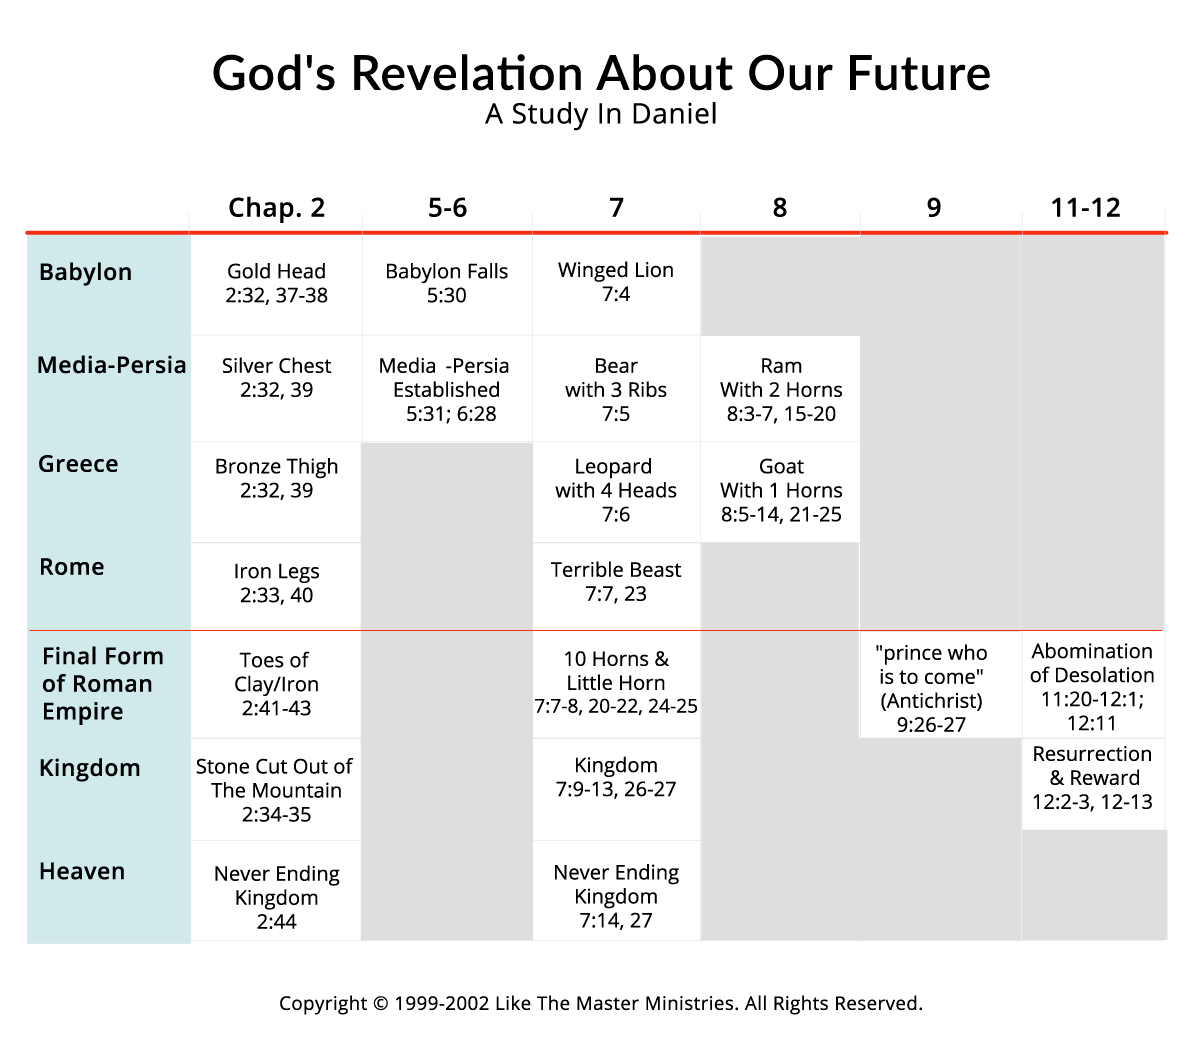 God's Revelation of Future